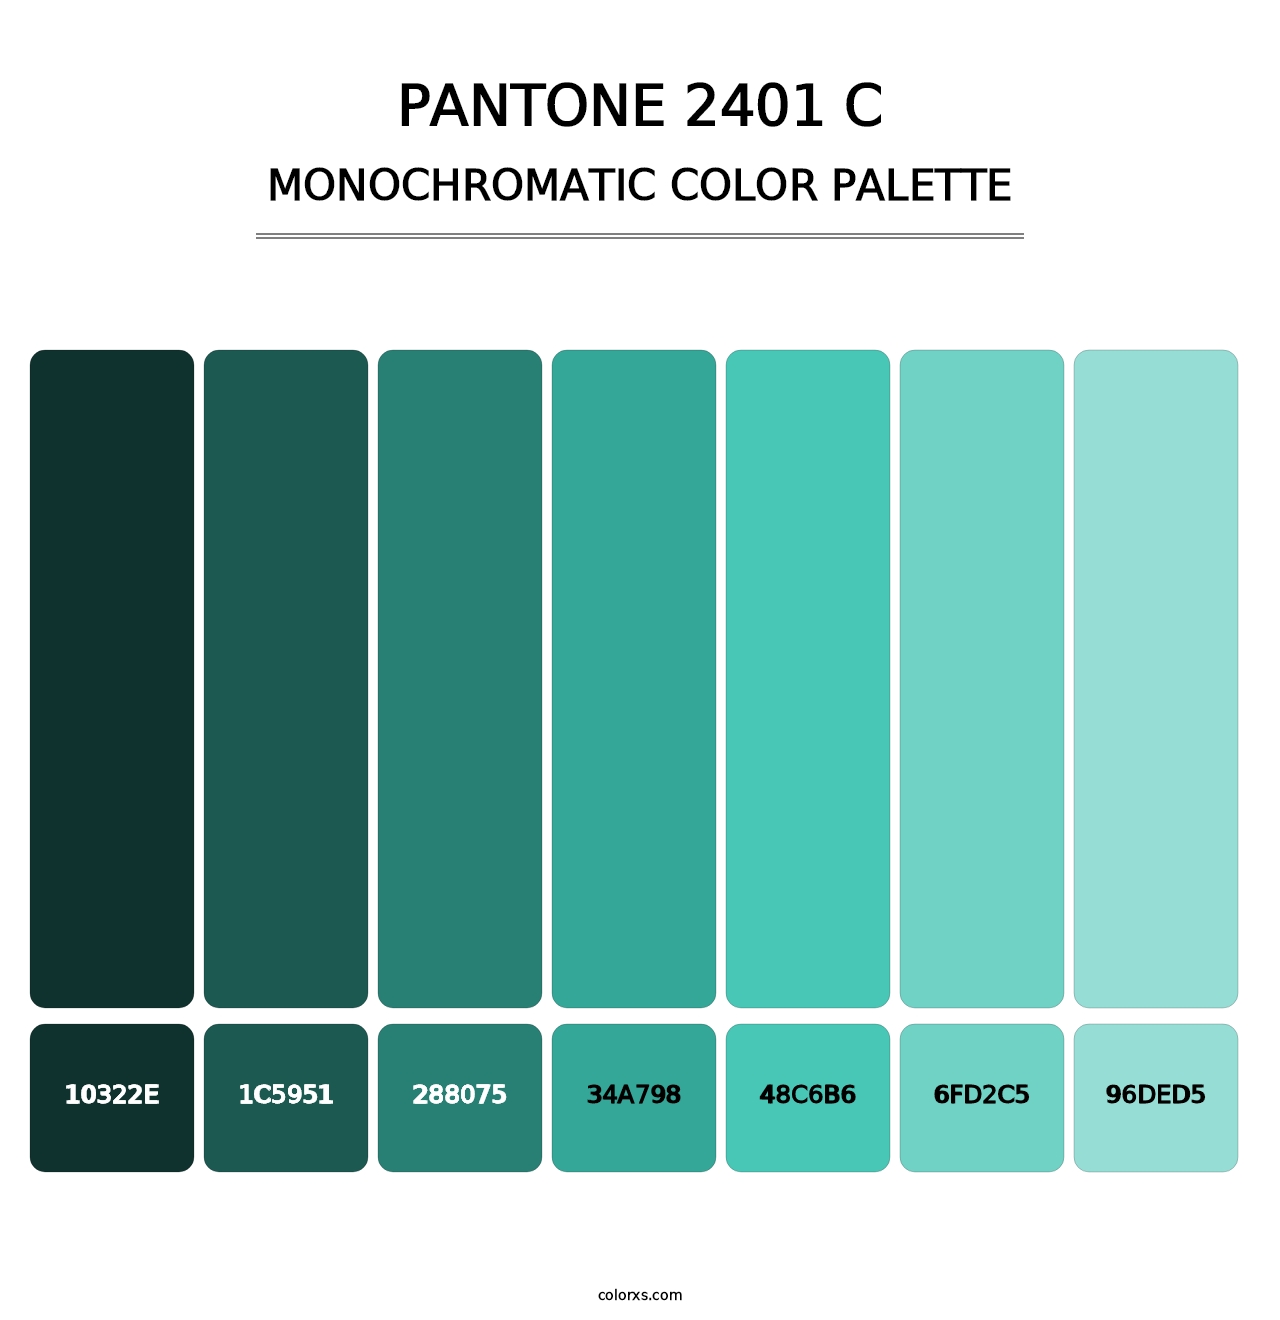 PANTONE 2401 C - Monochromatic Color Palette